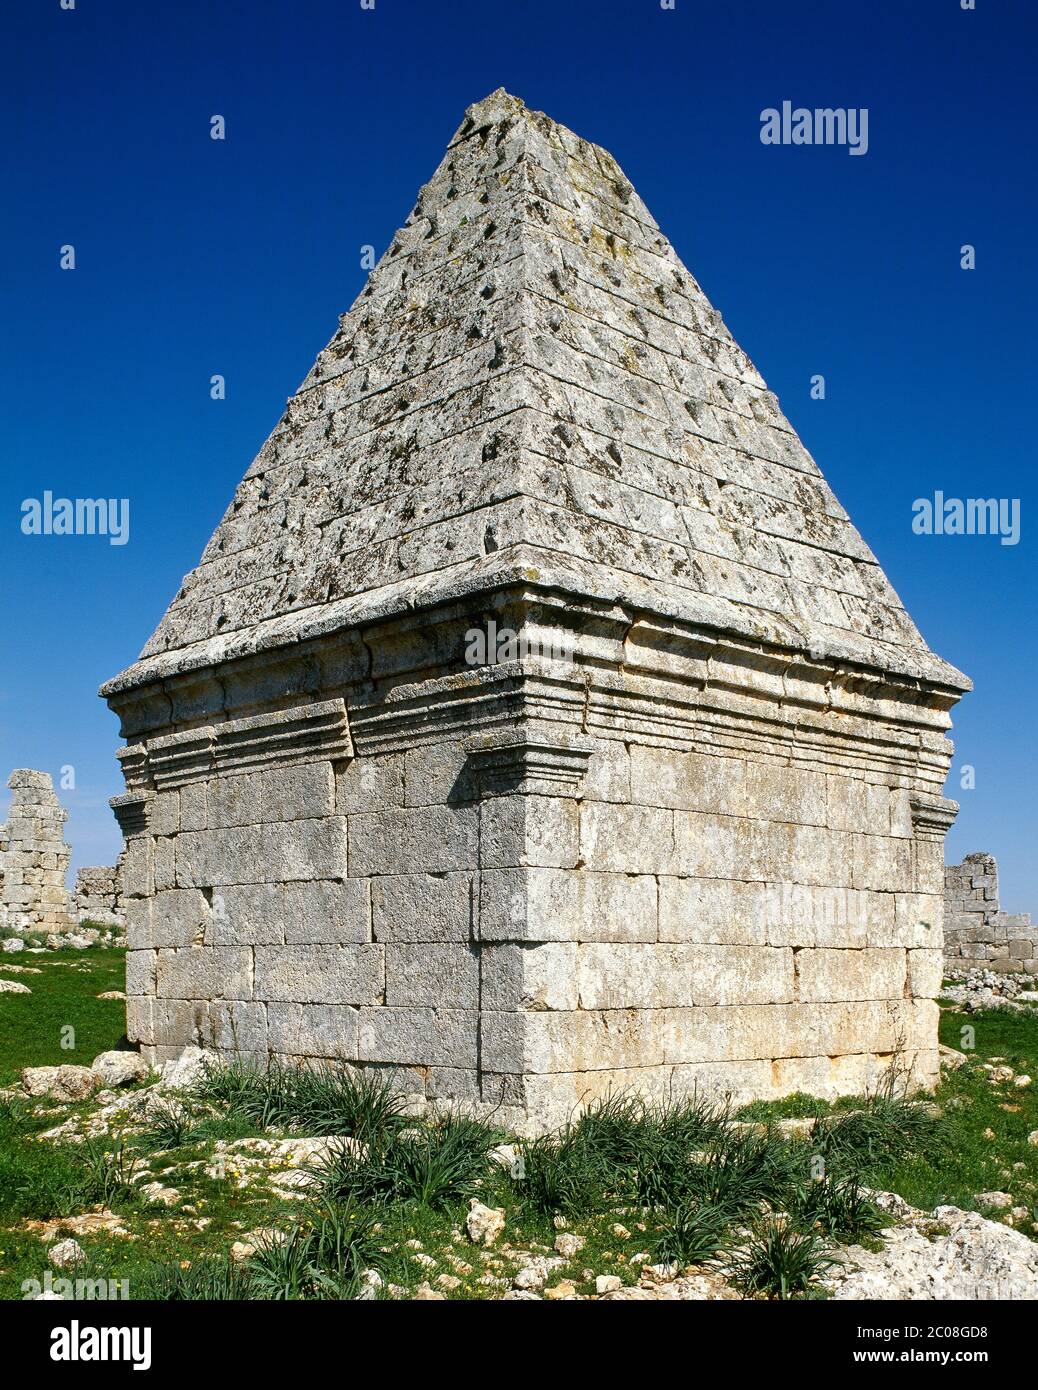 Siria. Città morte. Bara. Tomba piramidale bizantina. Foto scattata prima della guerra civile siriana. Foto Stock